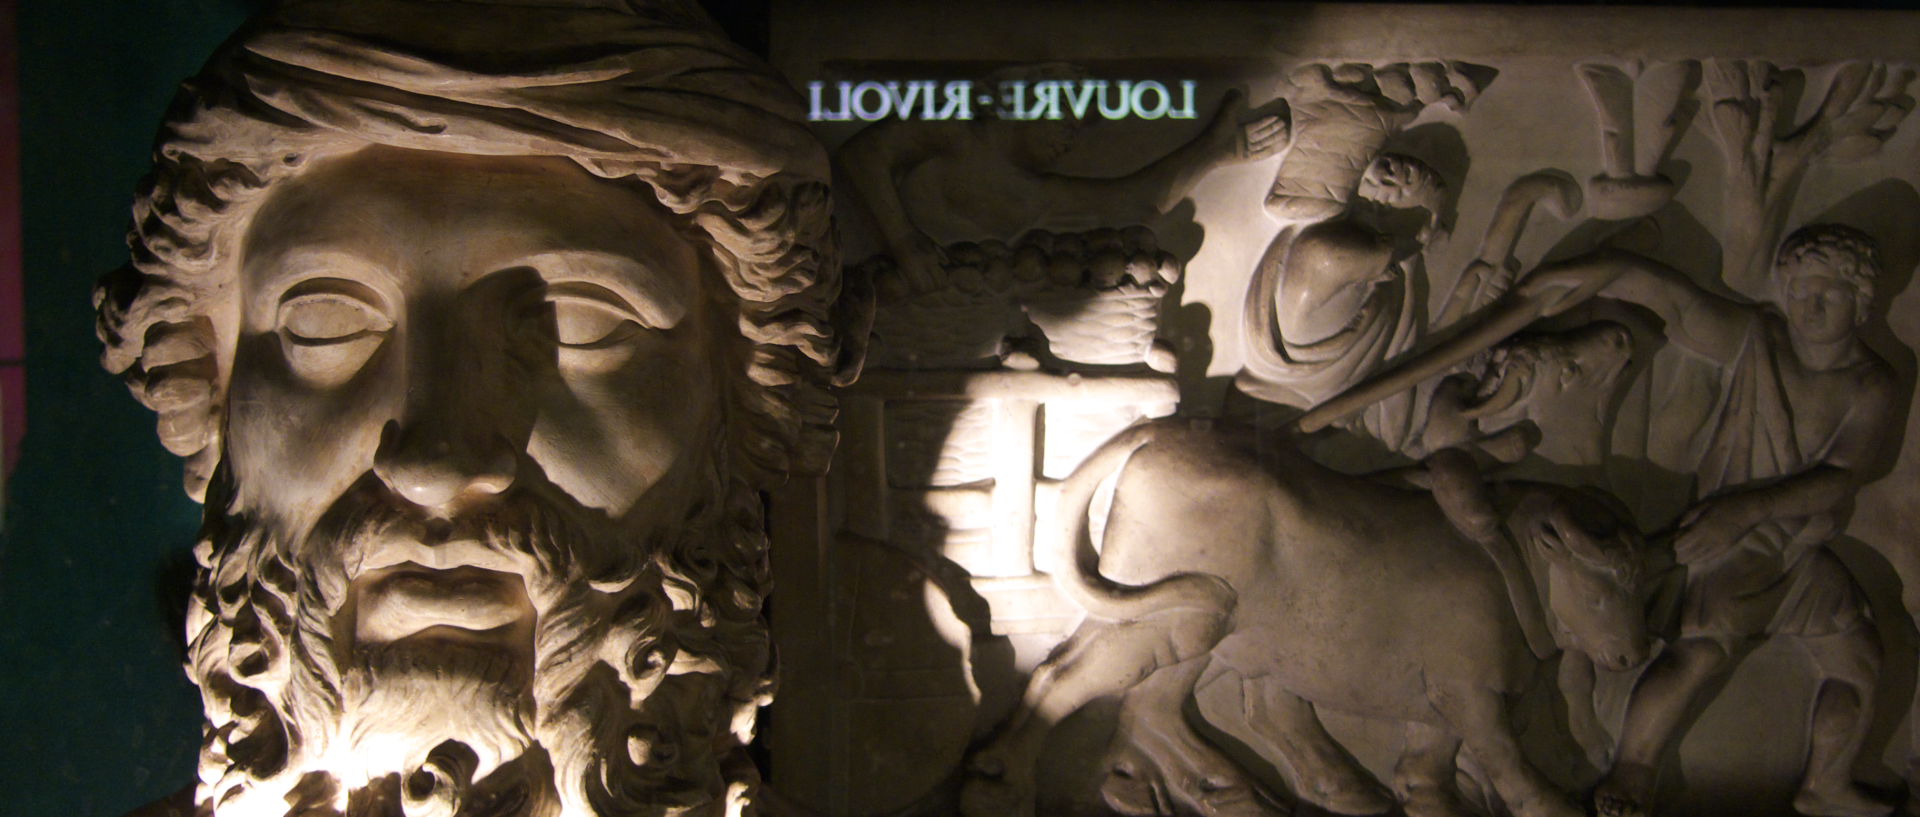 Photo d'une statue de Dionysos, dans le métro, Paris, station Louvre Rivoli.